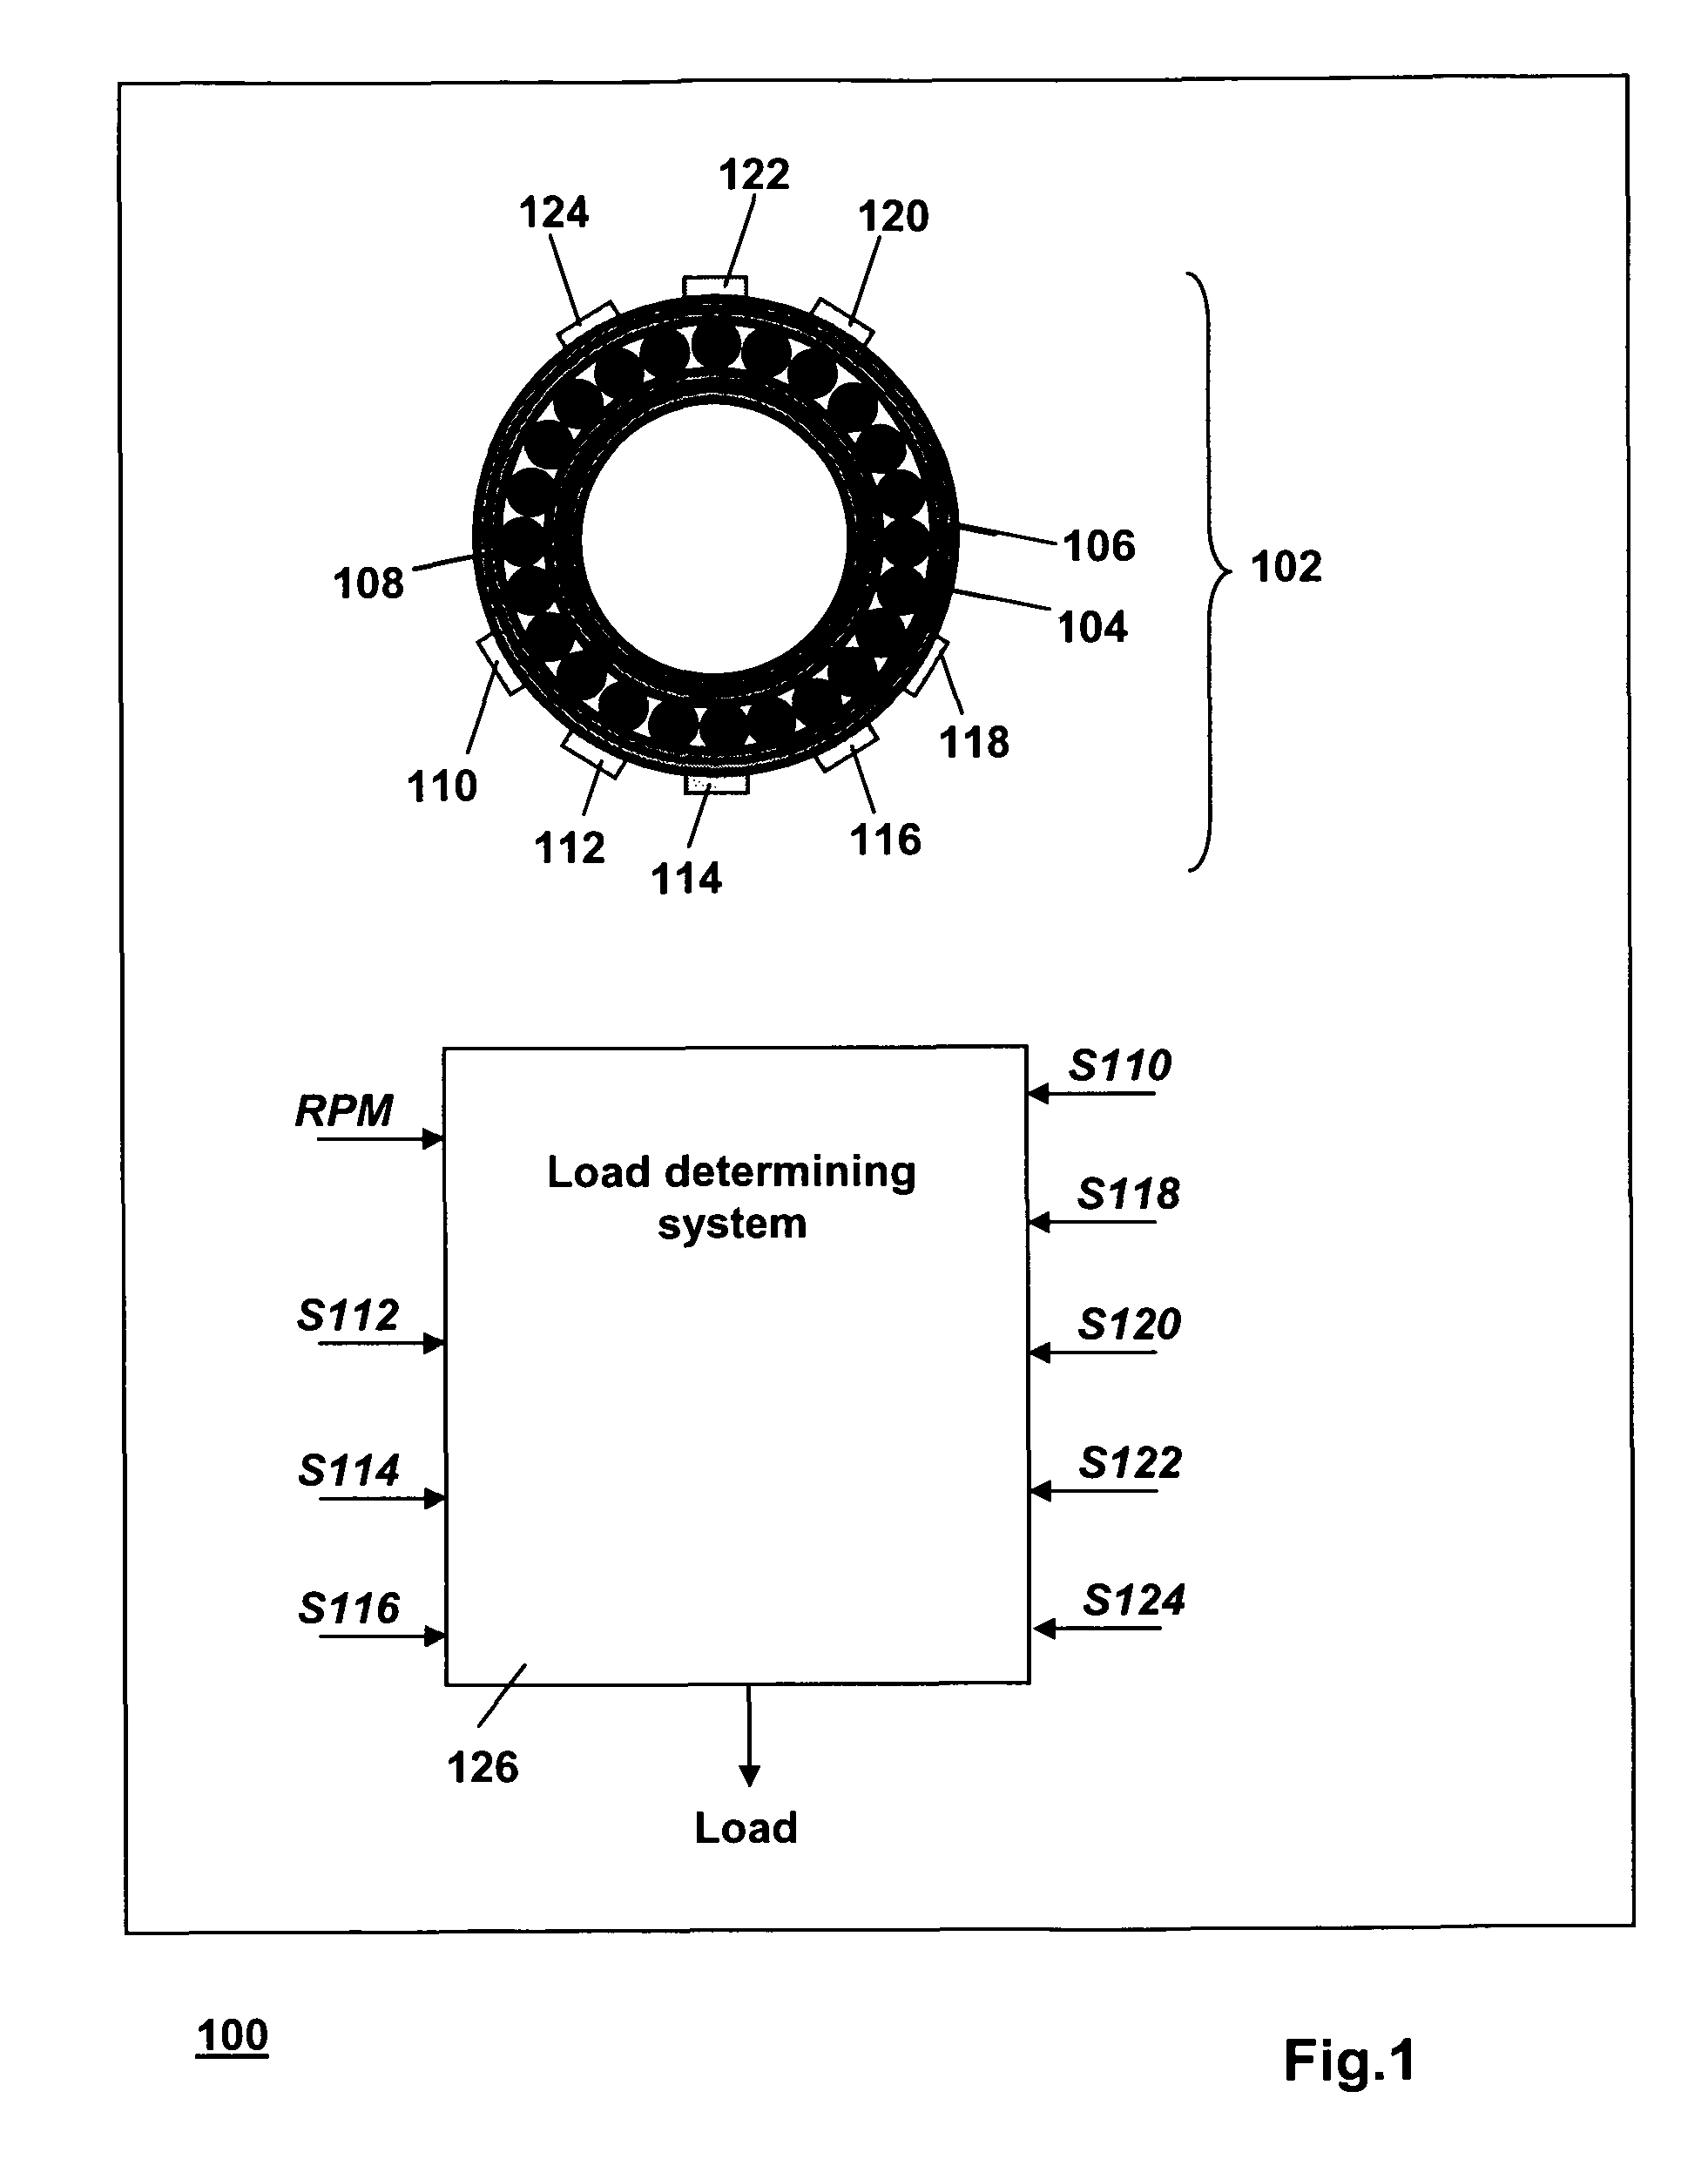 Load sensing on a bearing